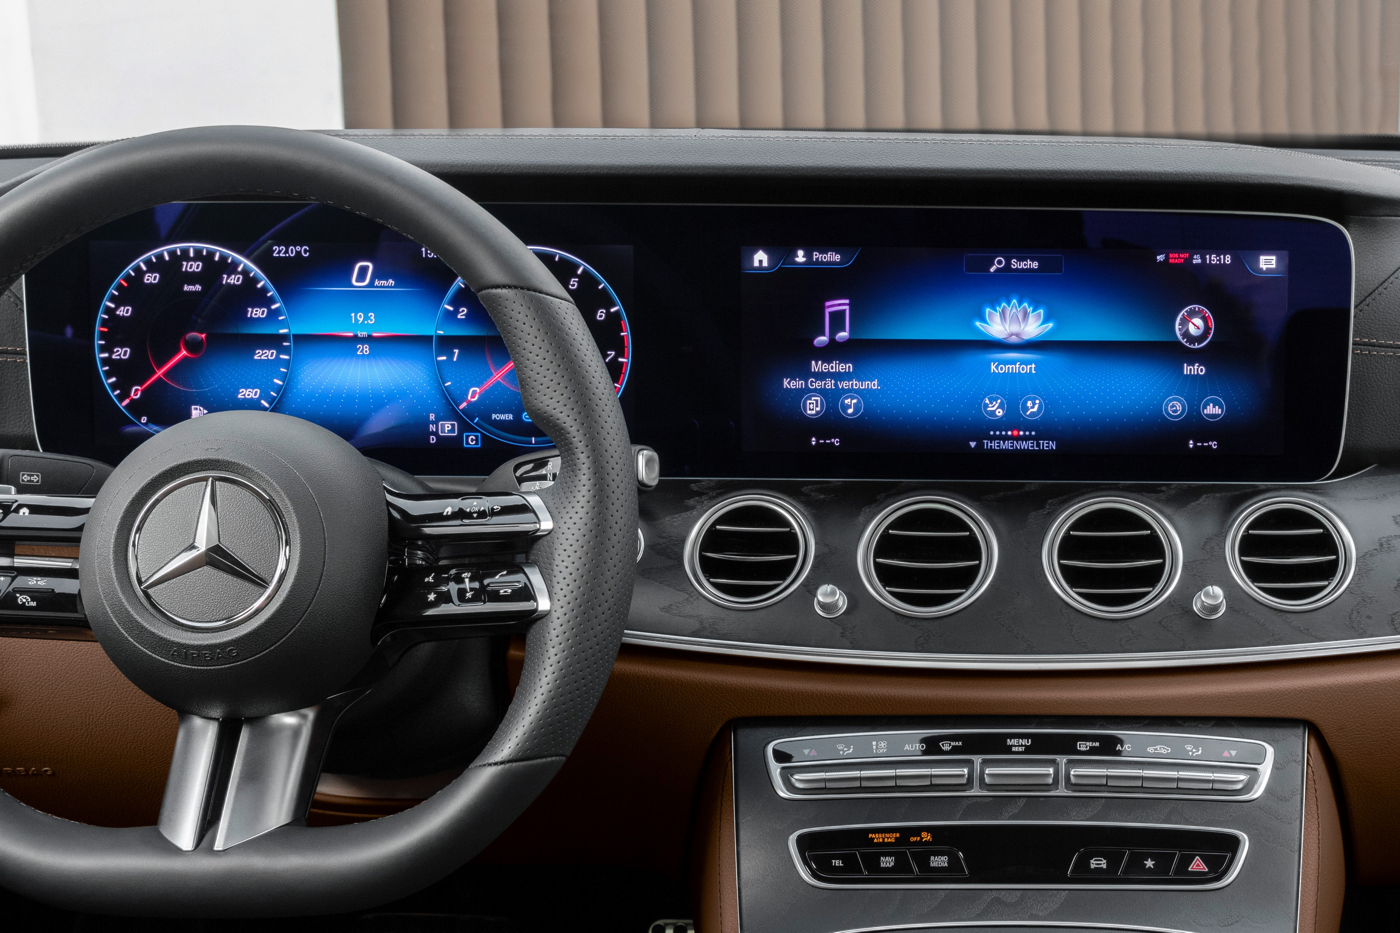 2021 Mercedes E-Class gauges display